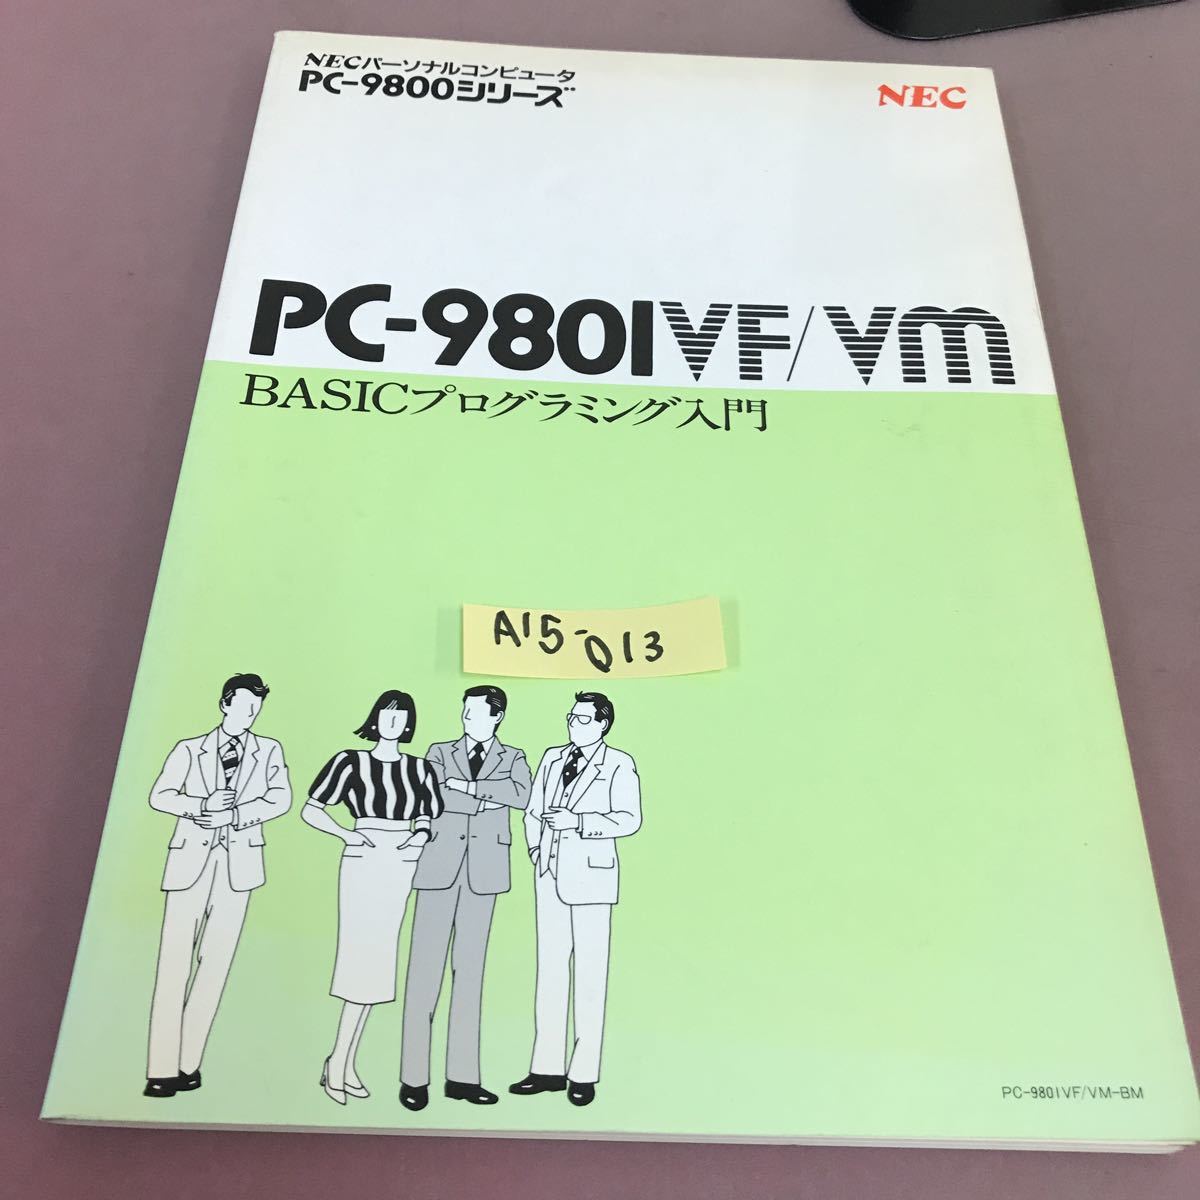 A15-013 NEC PC-980IVF/VM BASICプログラミング入門